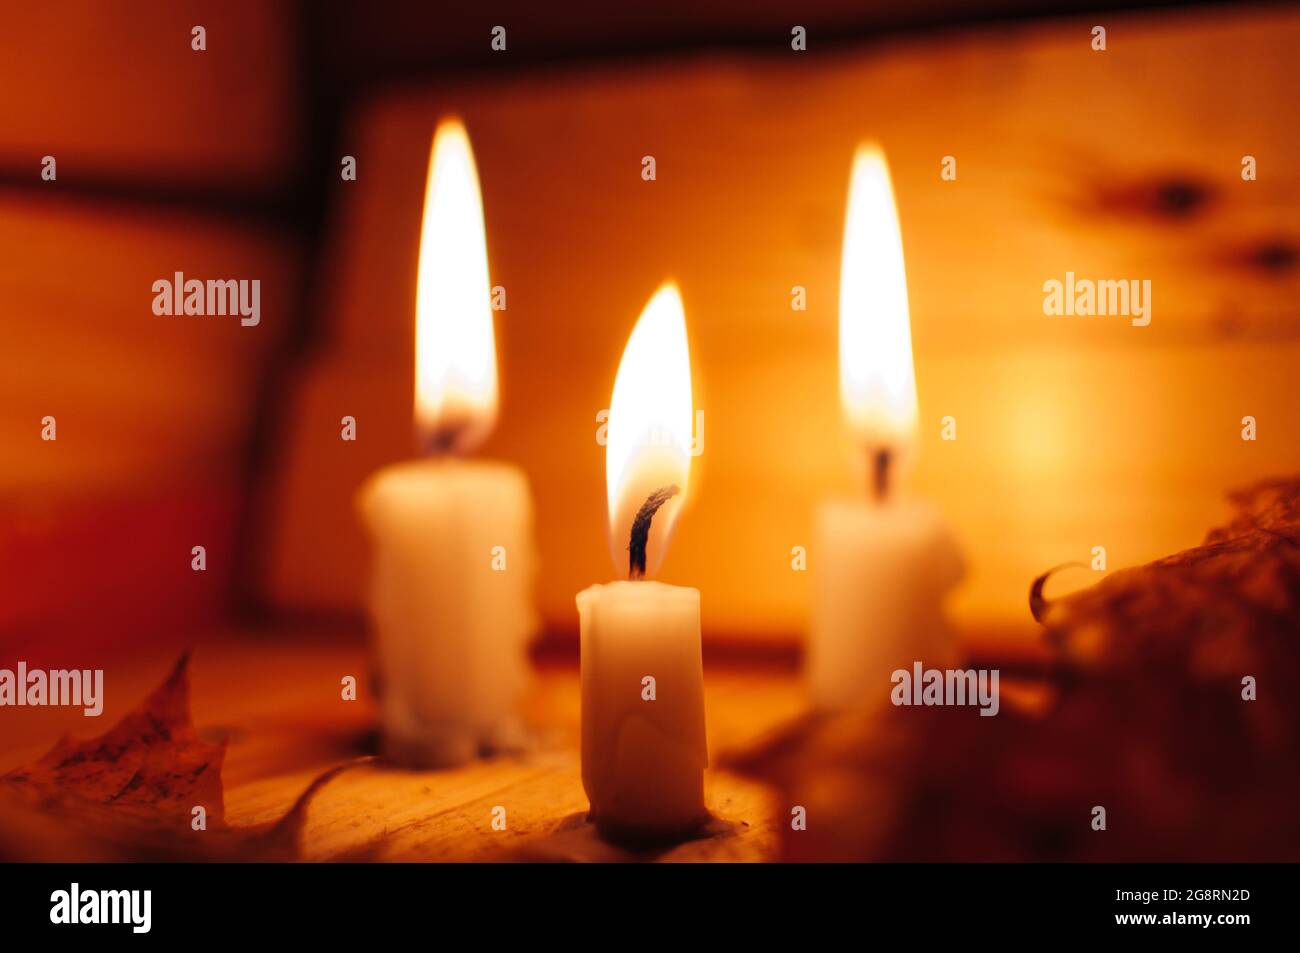 Gros plan de trois bougies allumées Photo Stock - Alamy